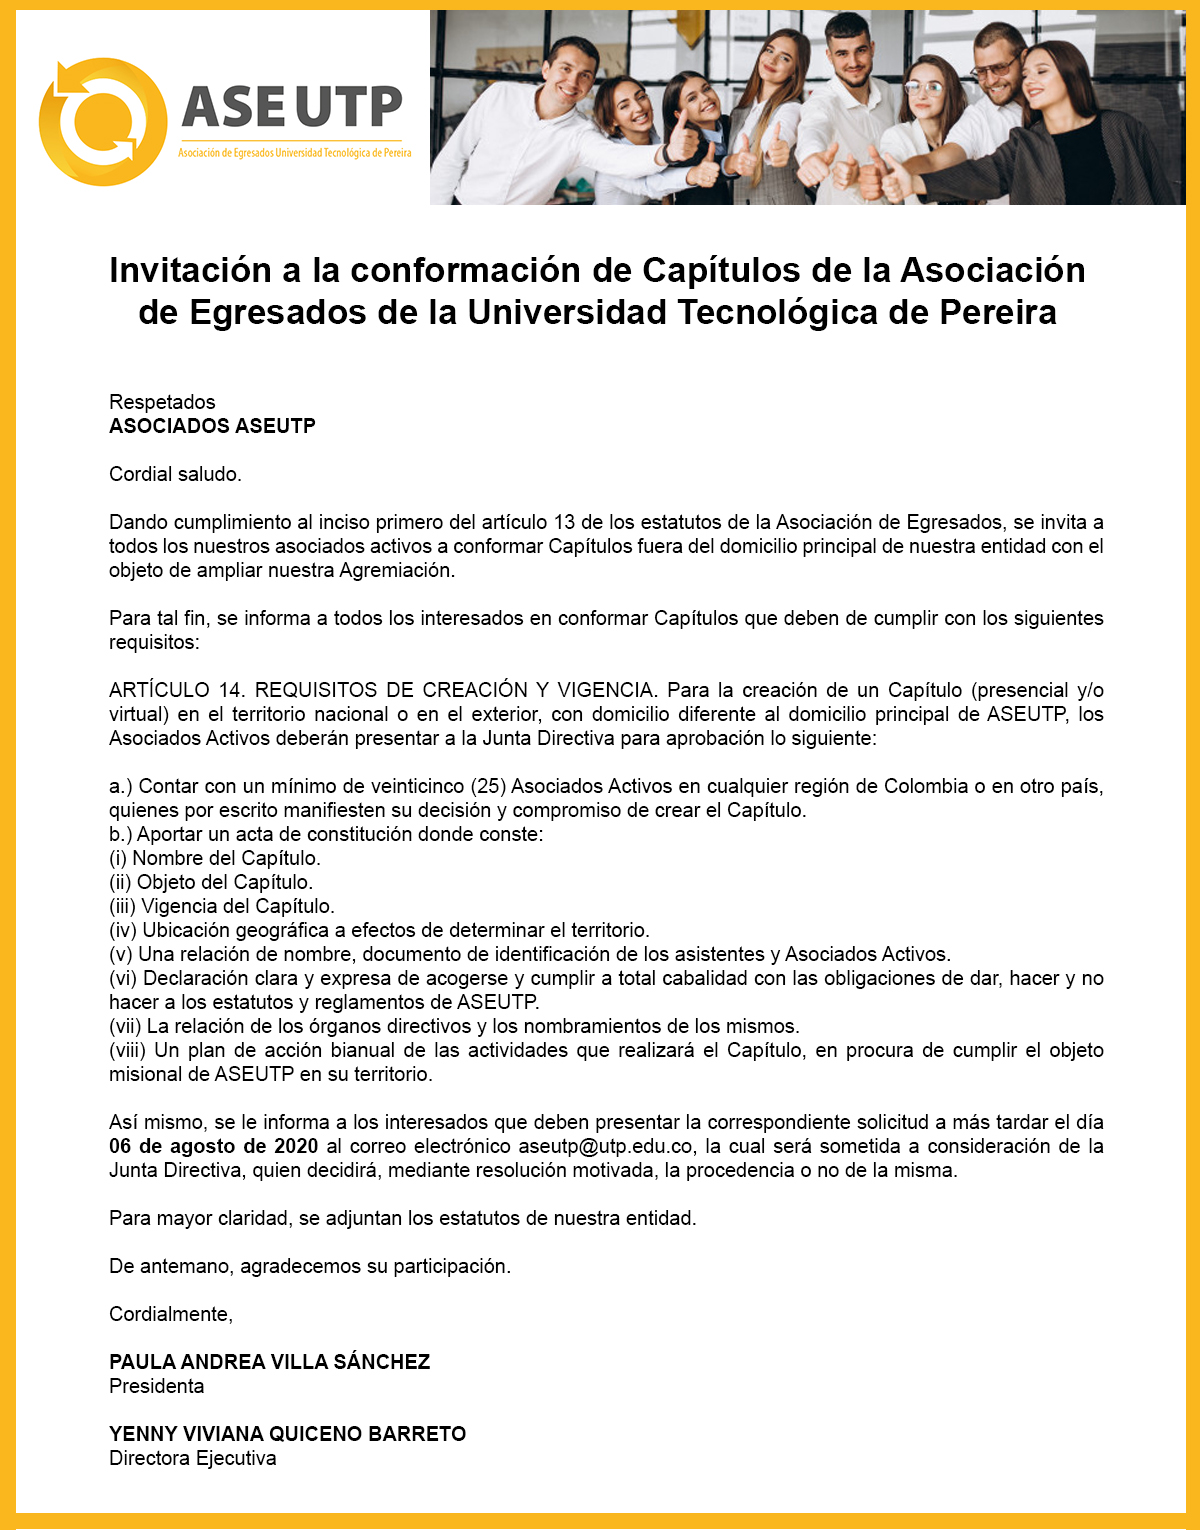 Invitación a la conformación de Capítulos de la Asociación de Egresados de la Universidad Tecnológica de Pereira